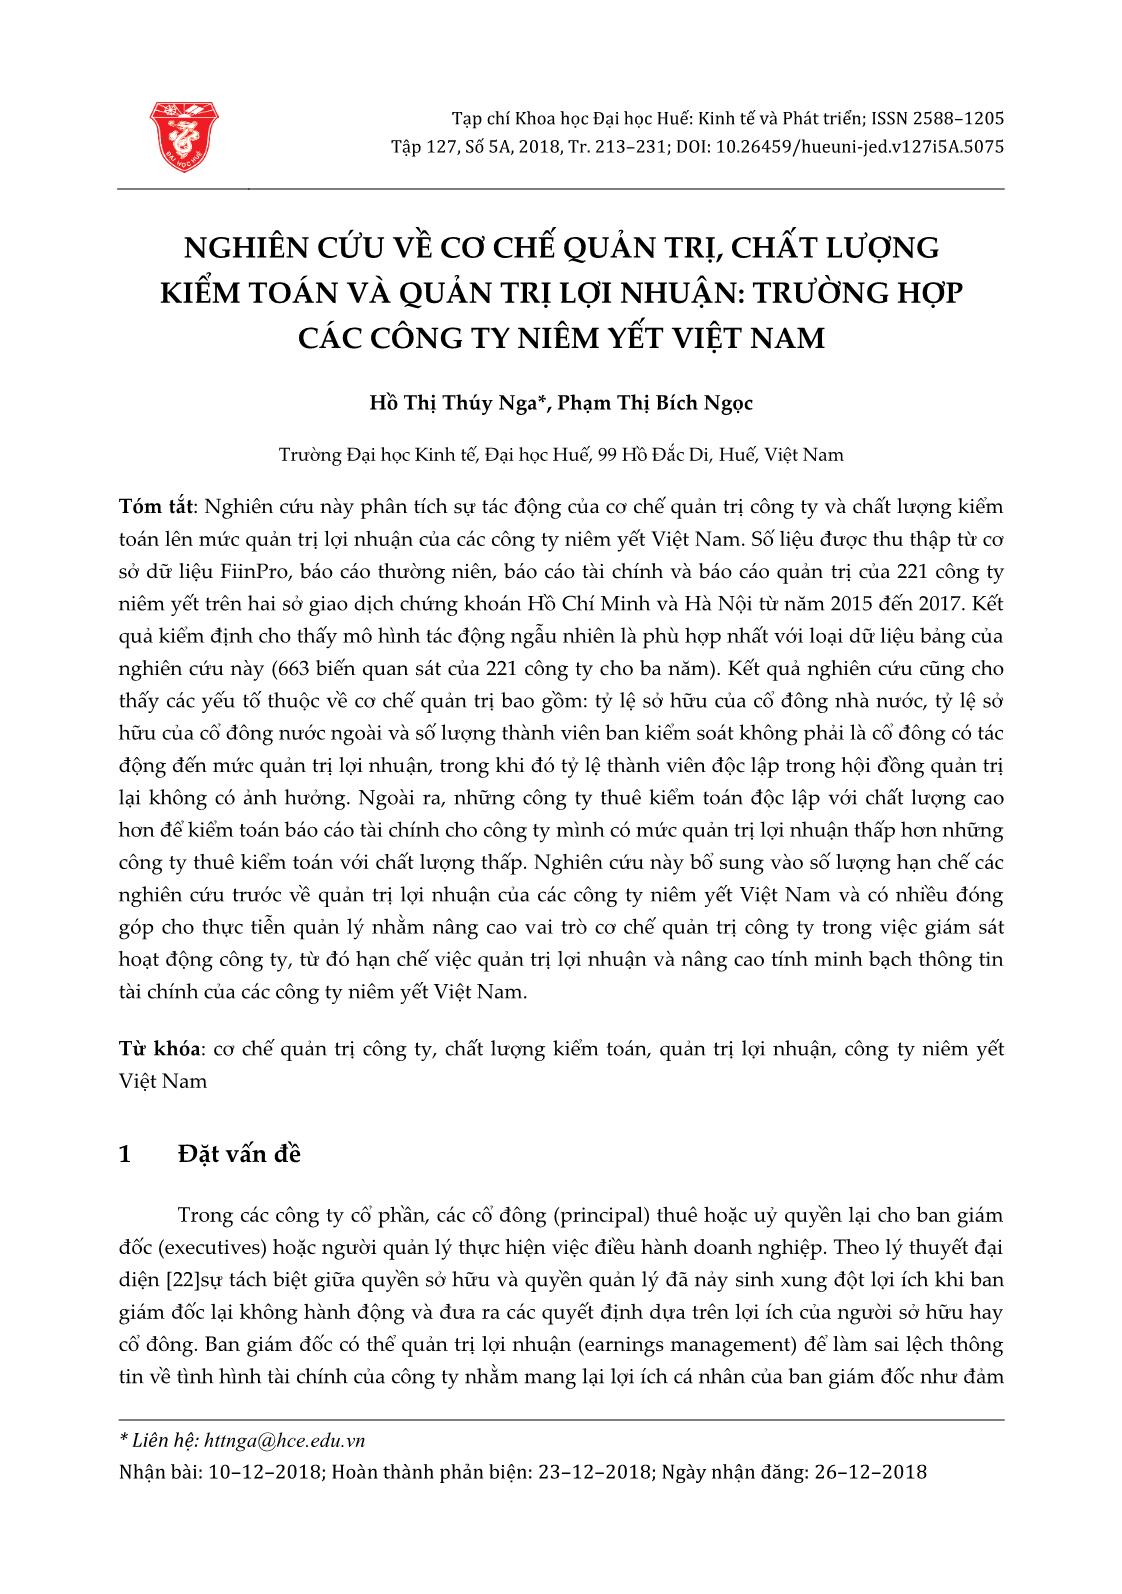 Nghiên cứu về cơ chế quản trị, chất lượng kiểm toán và quản trị lợi nhuận: Trường hợp các công ty niêm yết Việt Nam trang 1